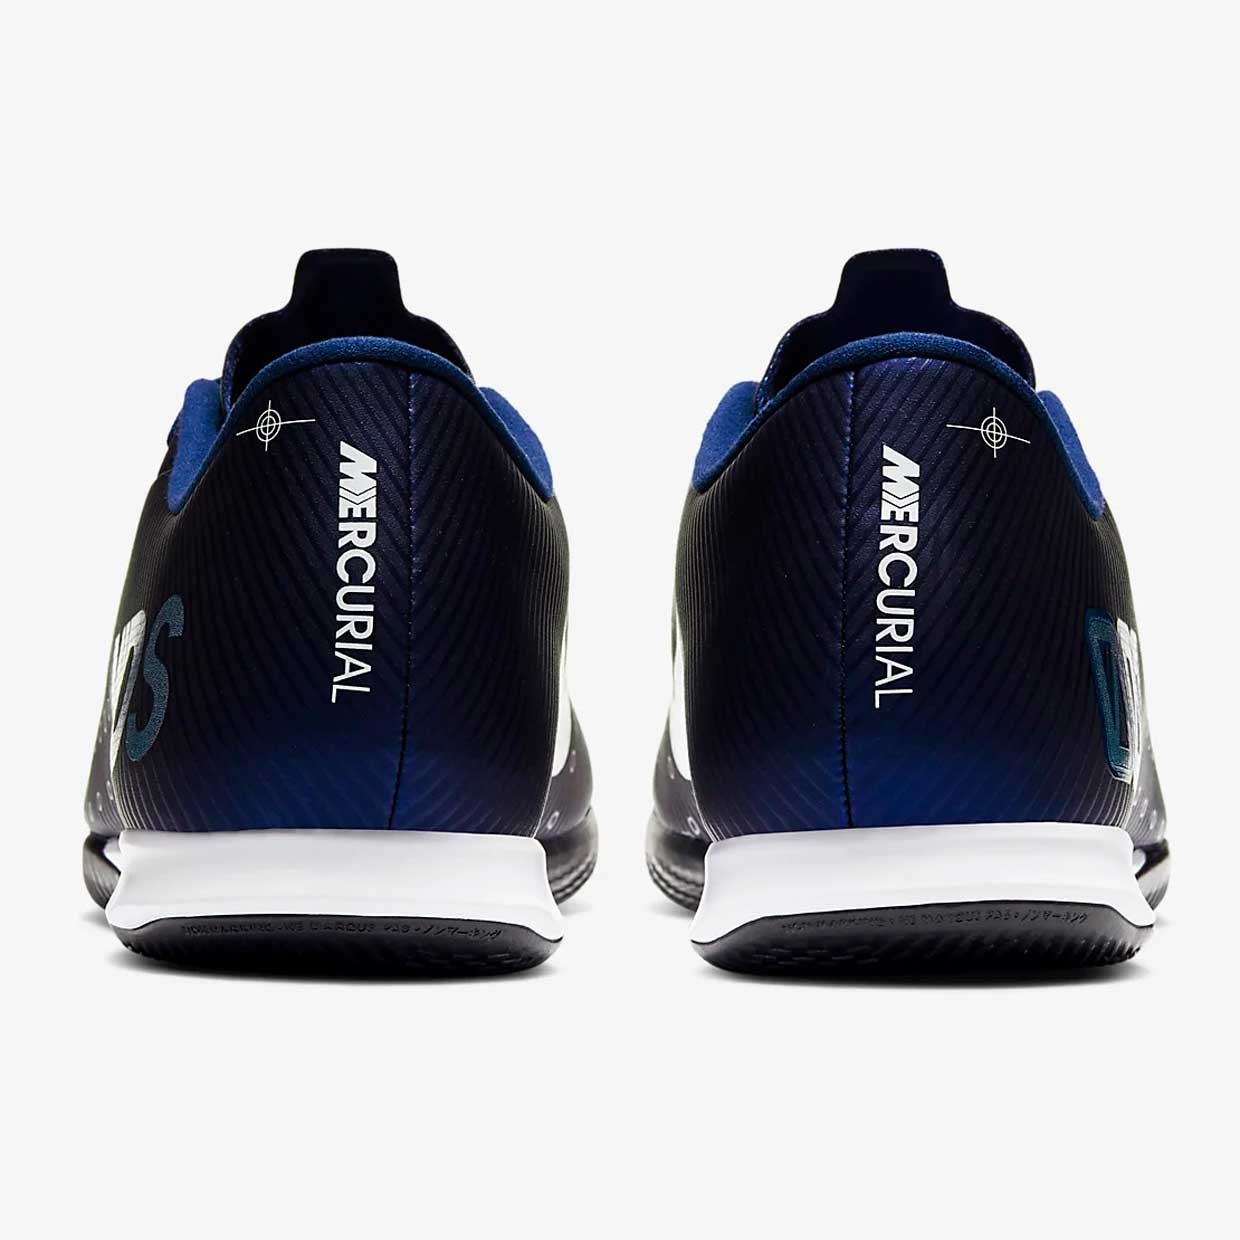 Обувь для зала Nike VAPOR 13 ACADEMY MDS IC